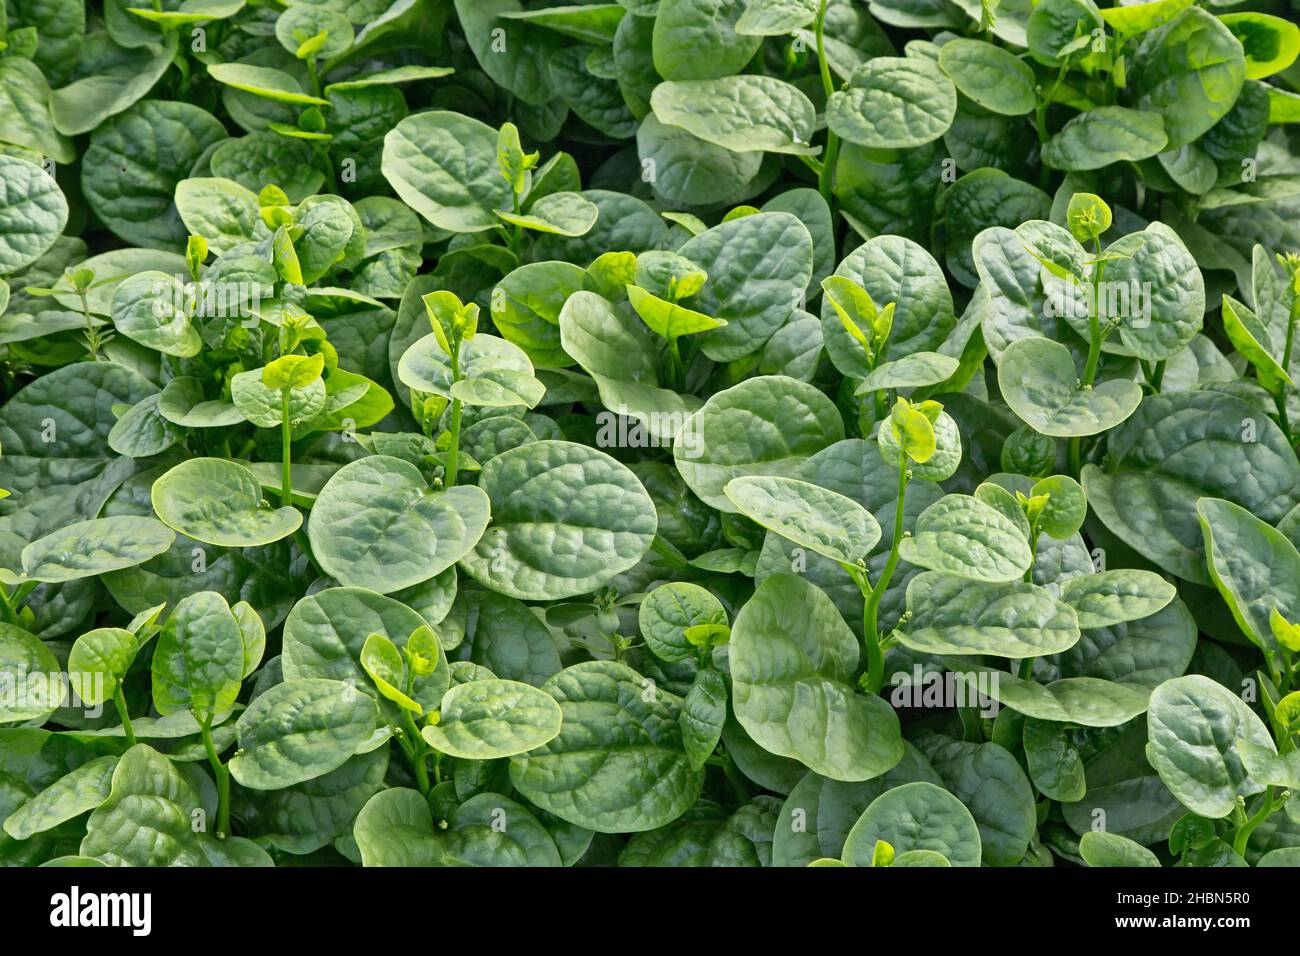 Malabar-Spinat (Rau Mong Toi) 'Basella Alba' wächst im Gewächshaus, asiatisches Gemüse. Stockfoto